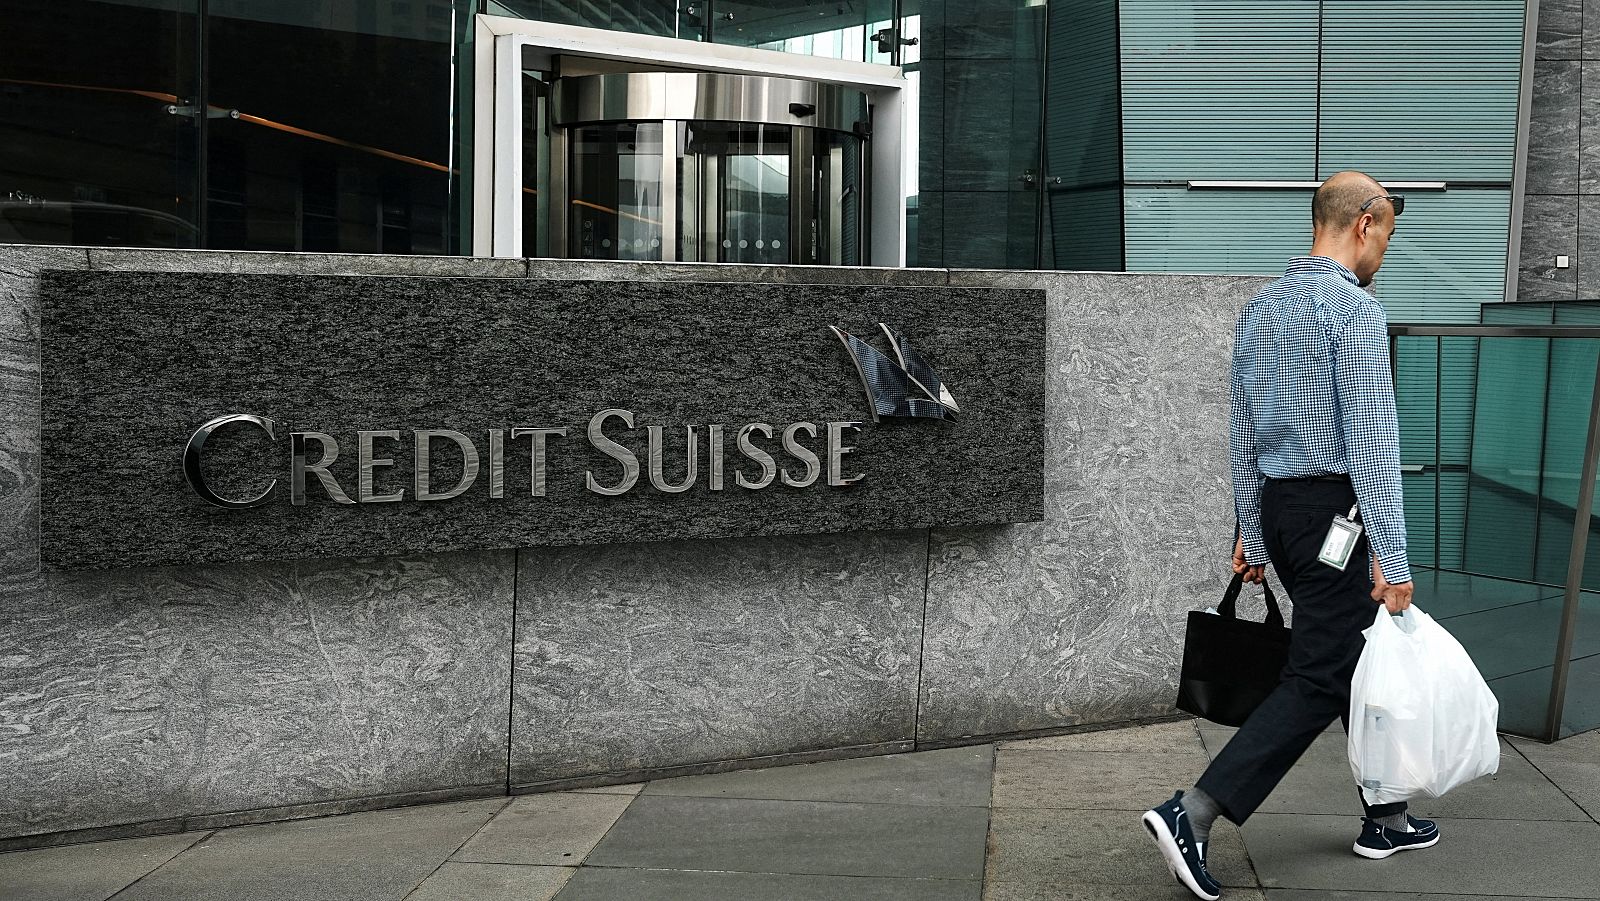 Logo de Credit Suisse delante de una sucursal